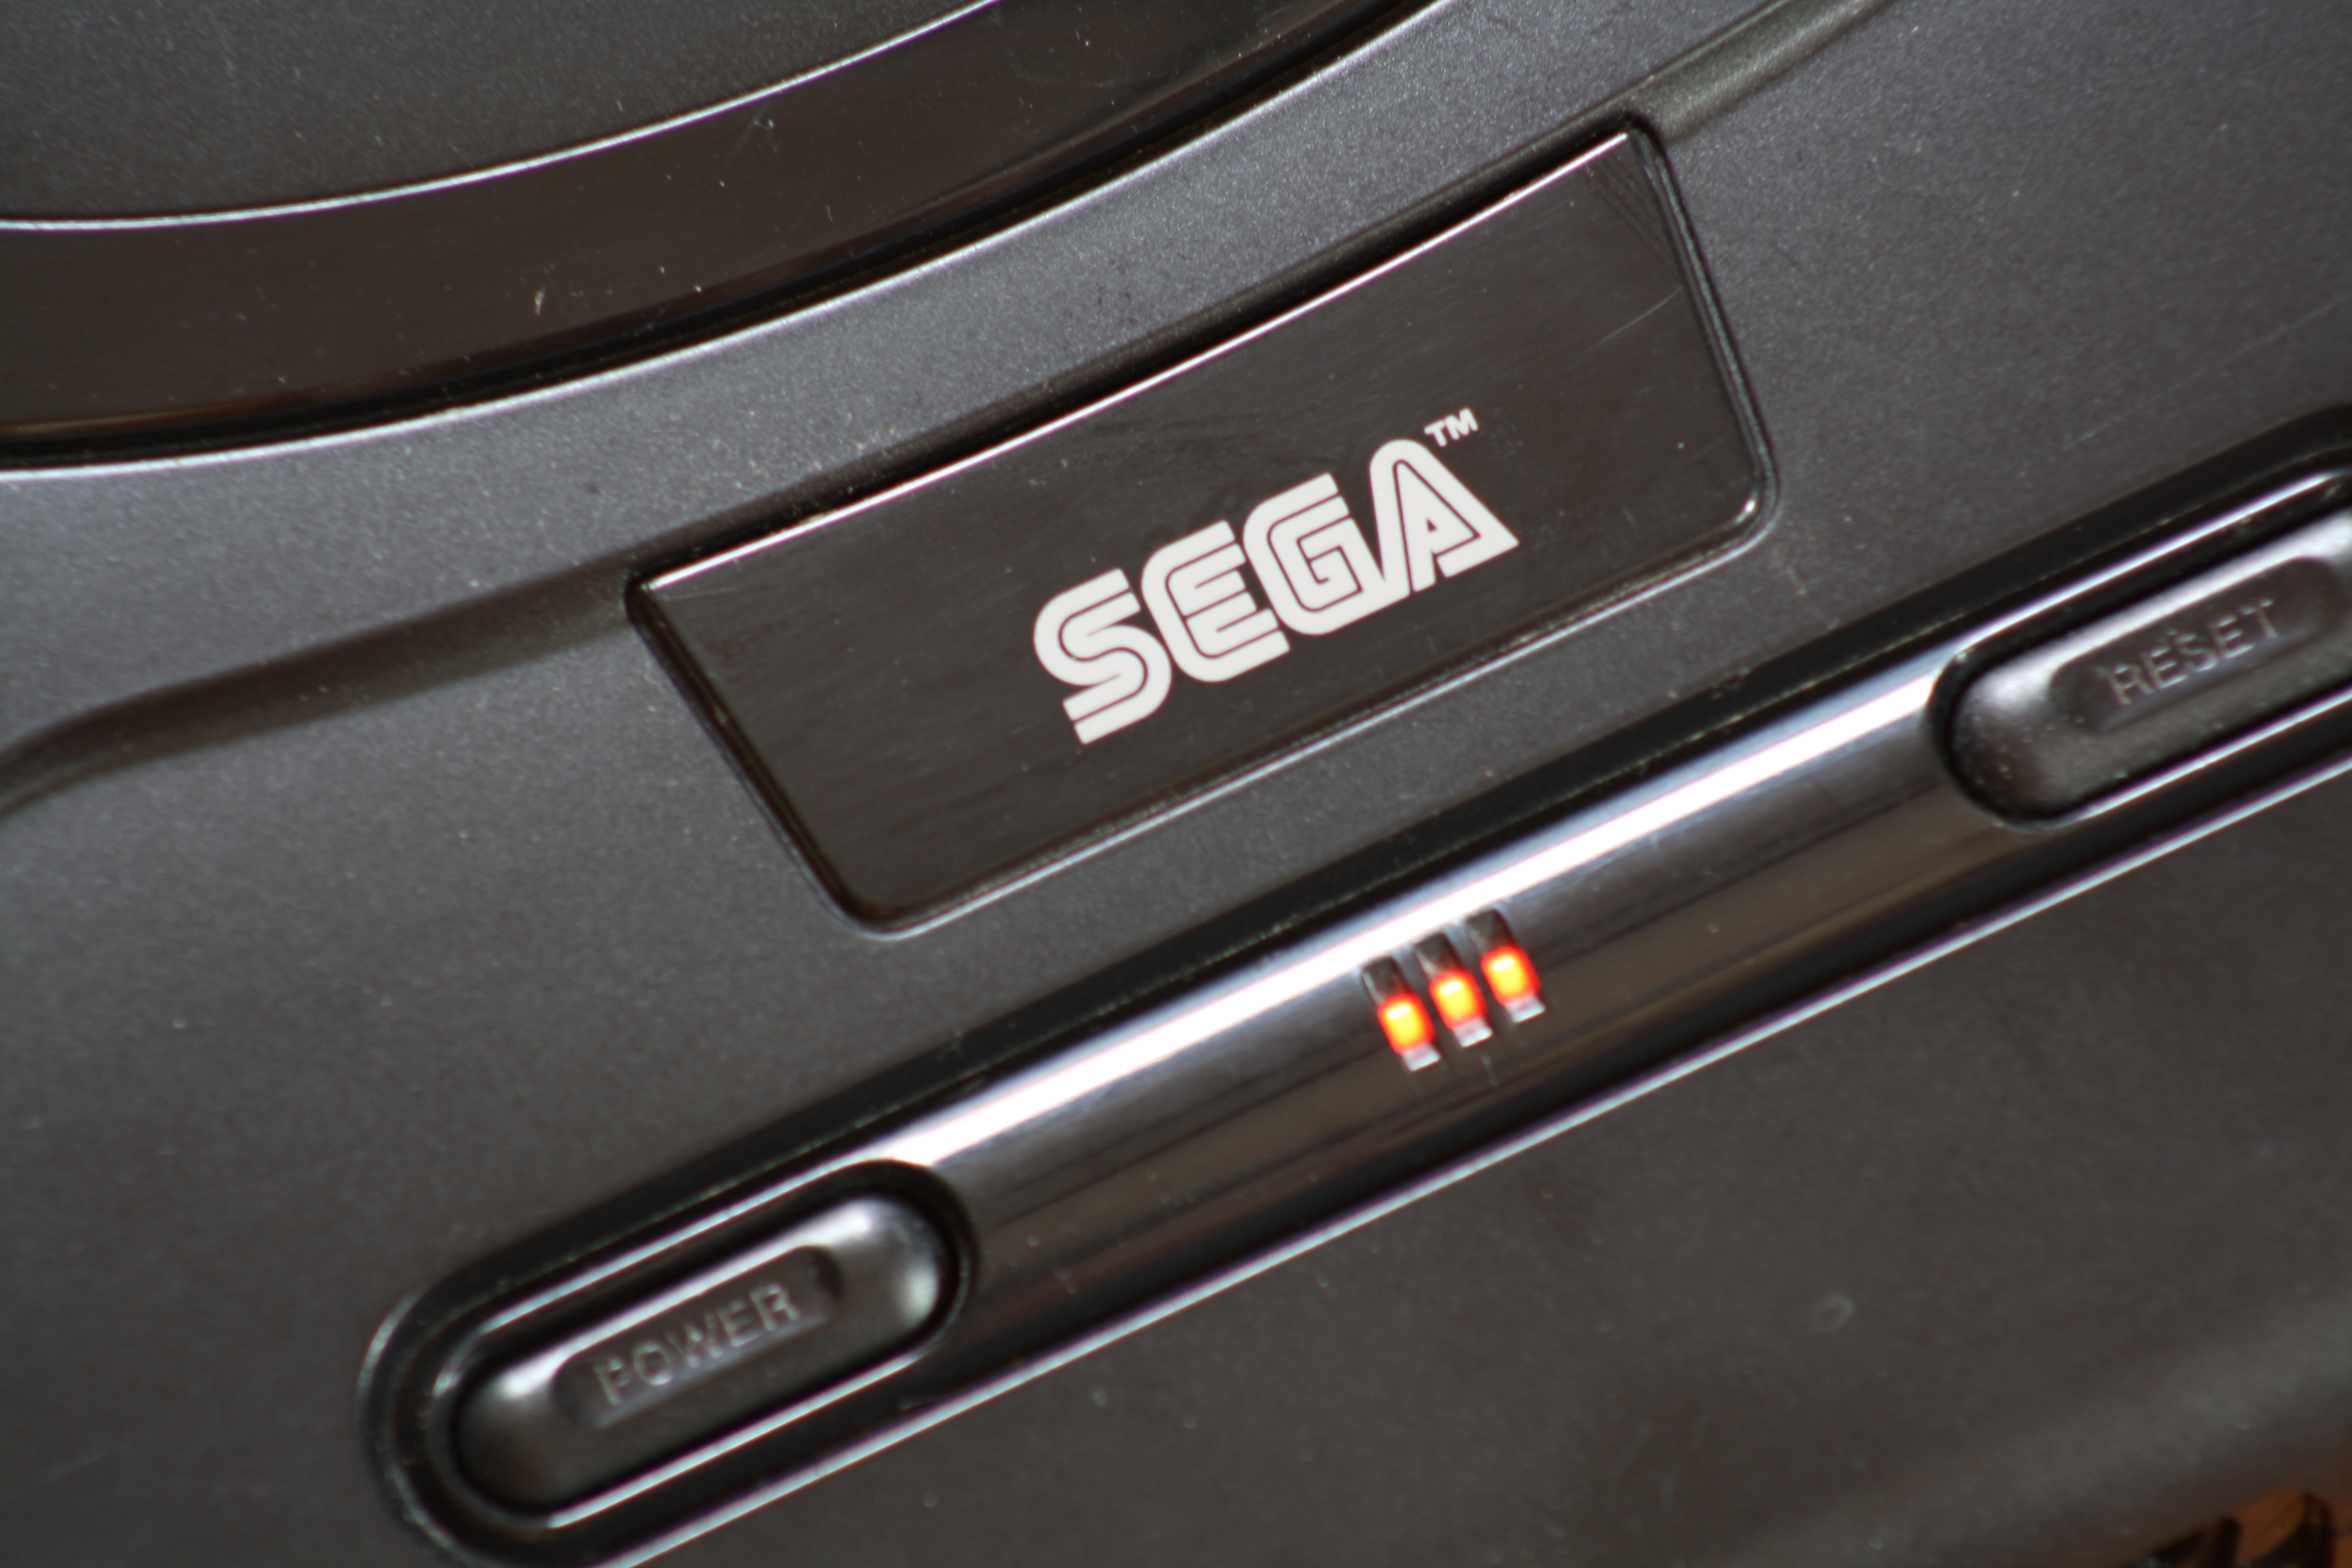 Sega Genesis HD Wallpaper General